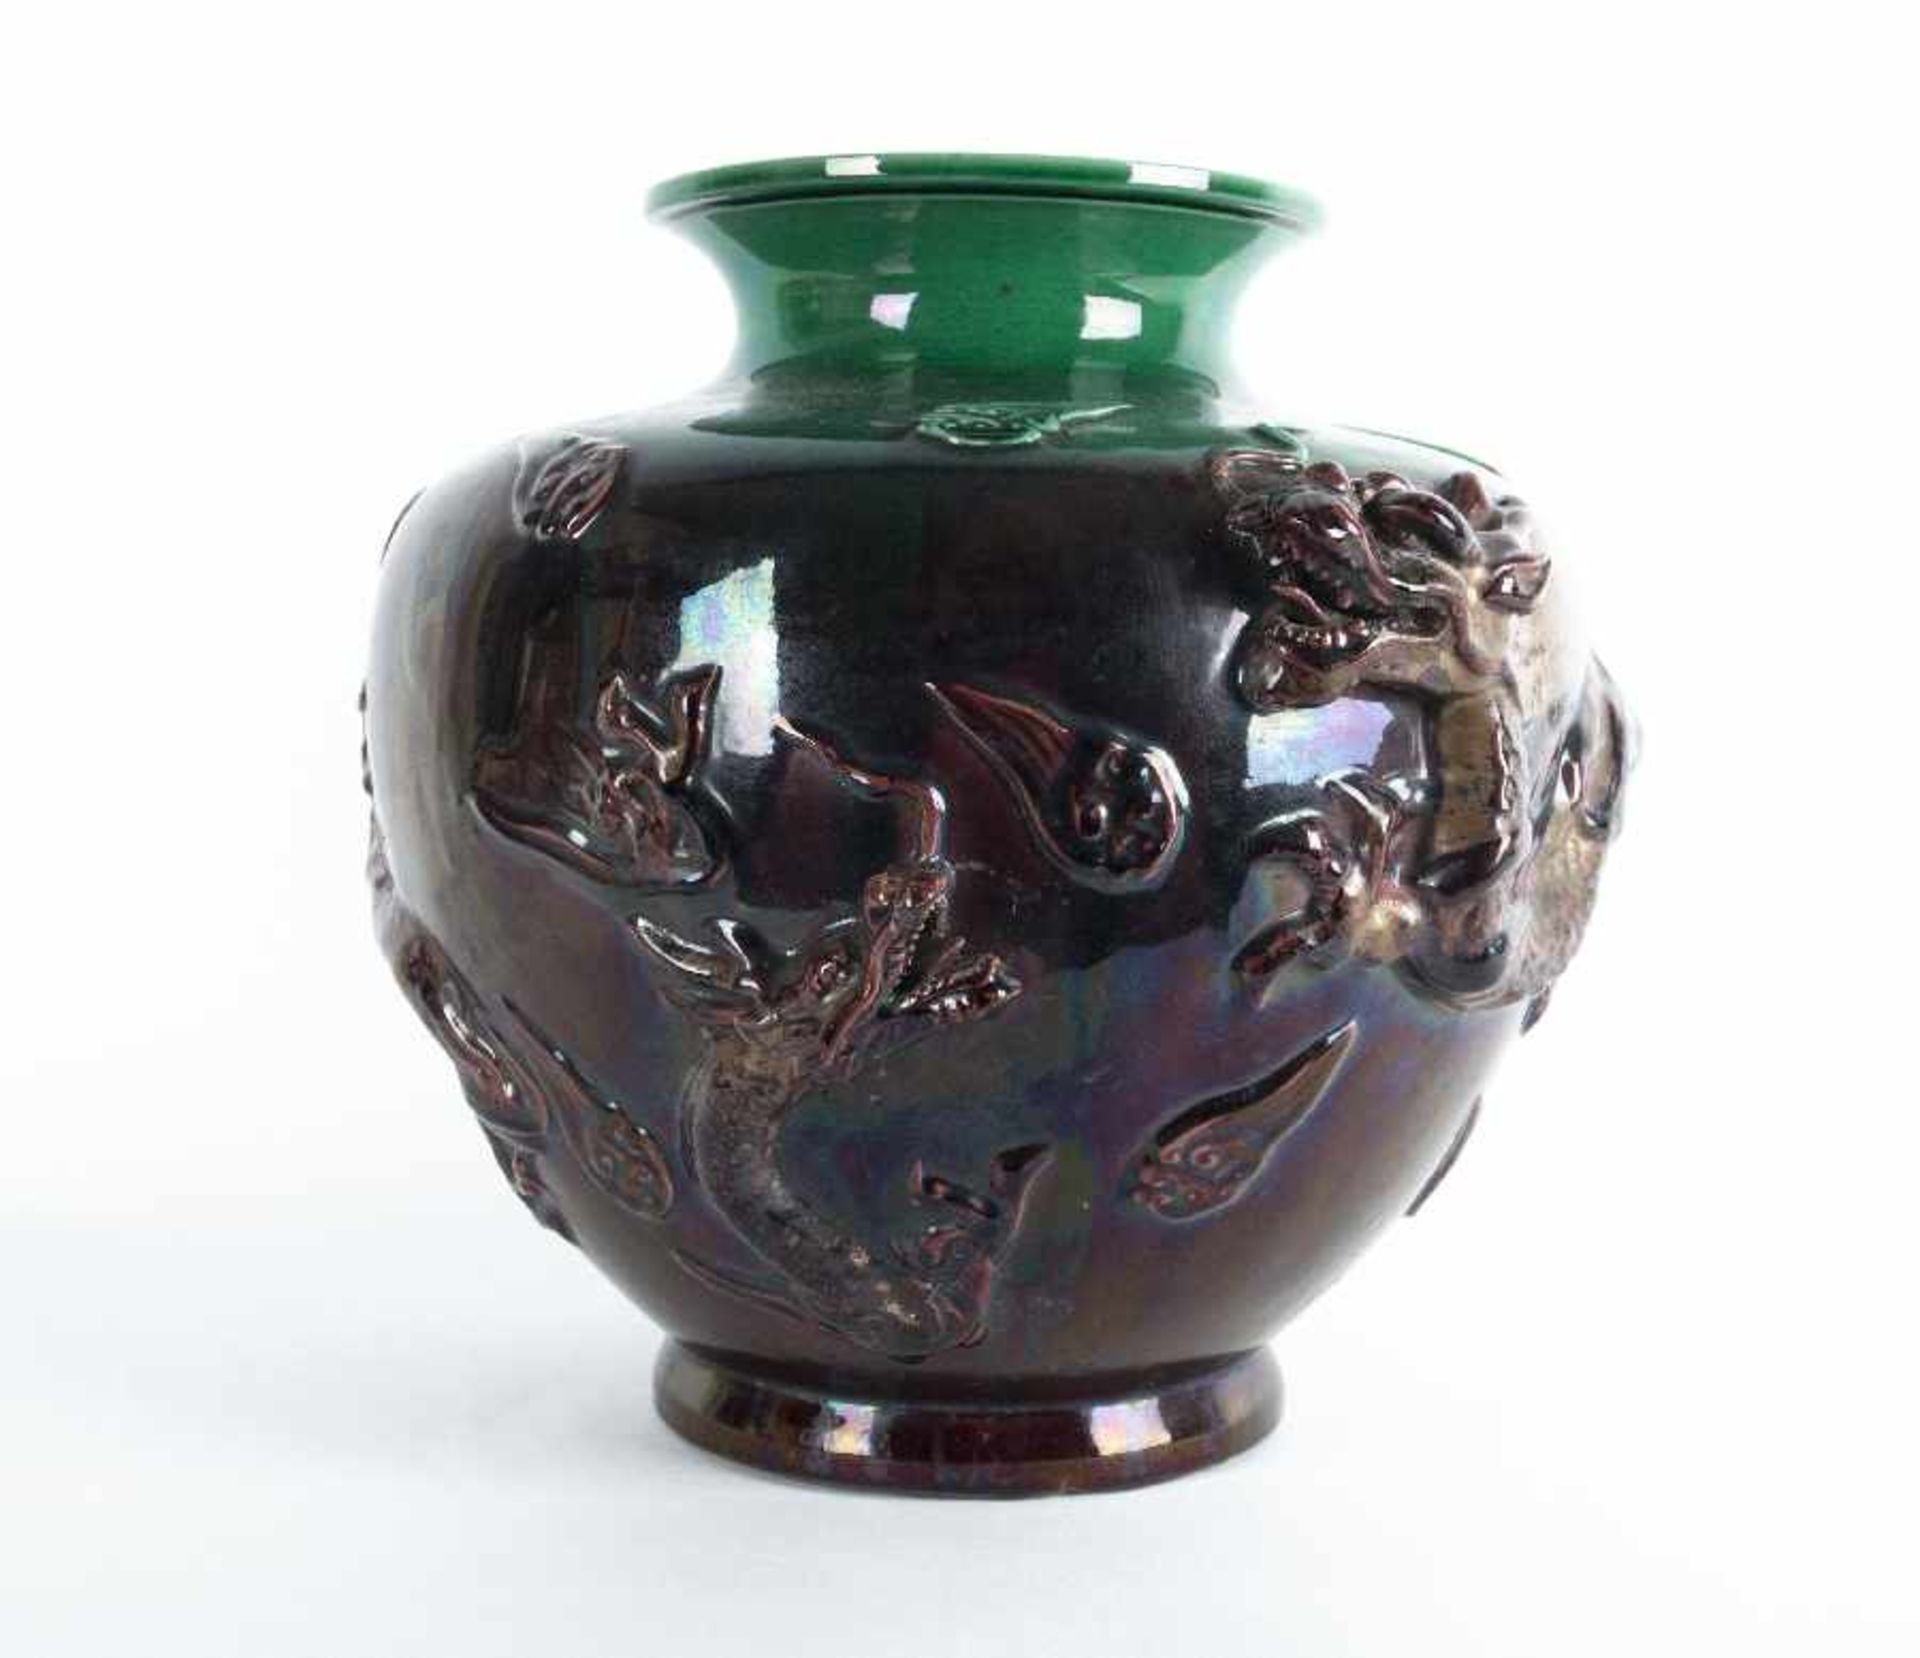 China Vase mit Drachenmotiv Keramik, weißlicher Scherben, farbig glasiert; H 30,5 cm, Dm 30,5 cm - Bild 2 aus 2